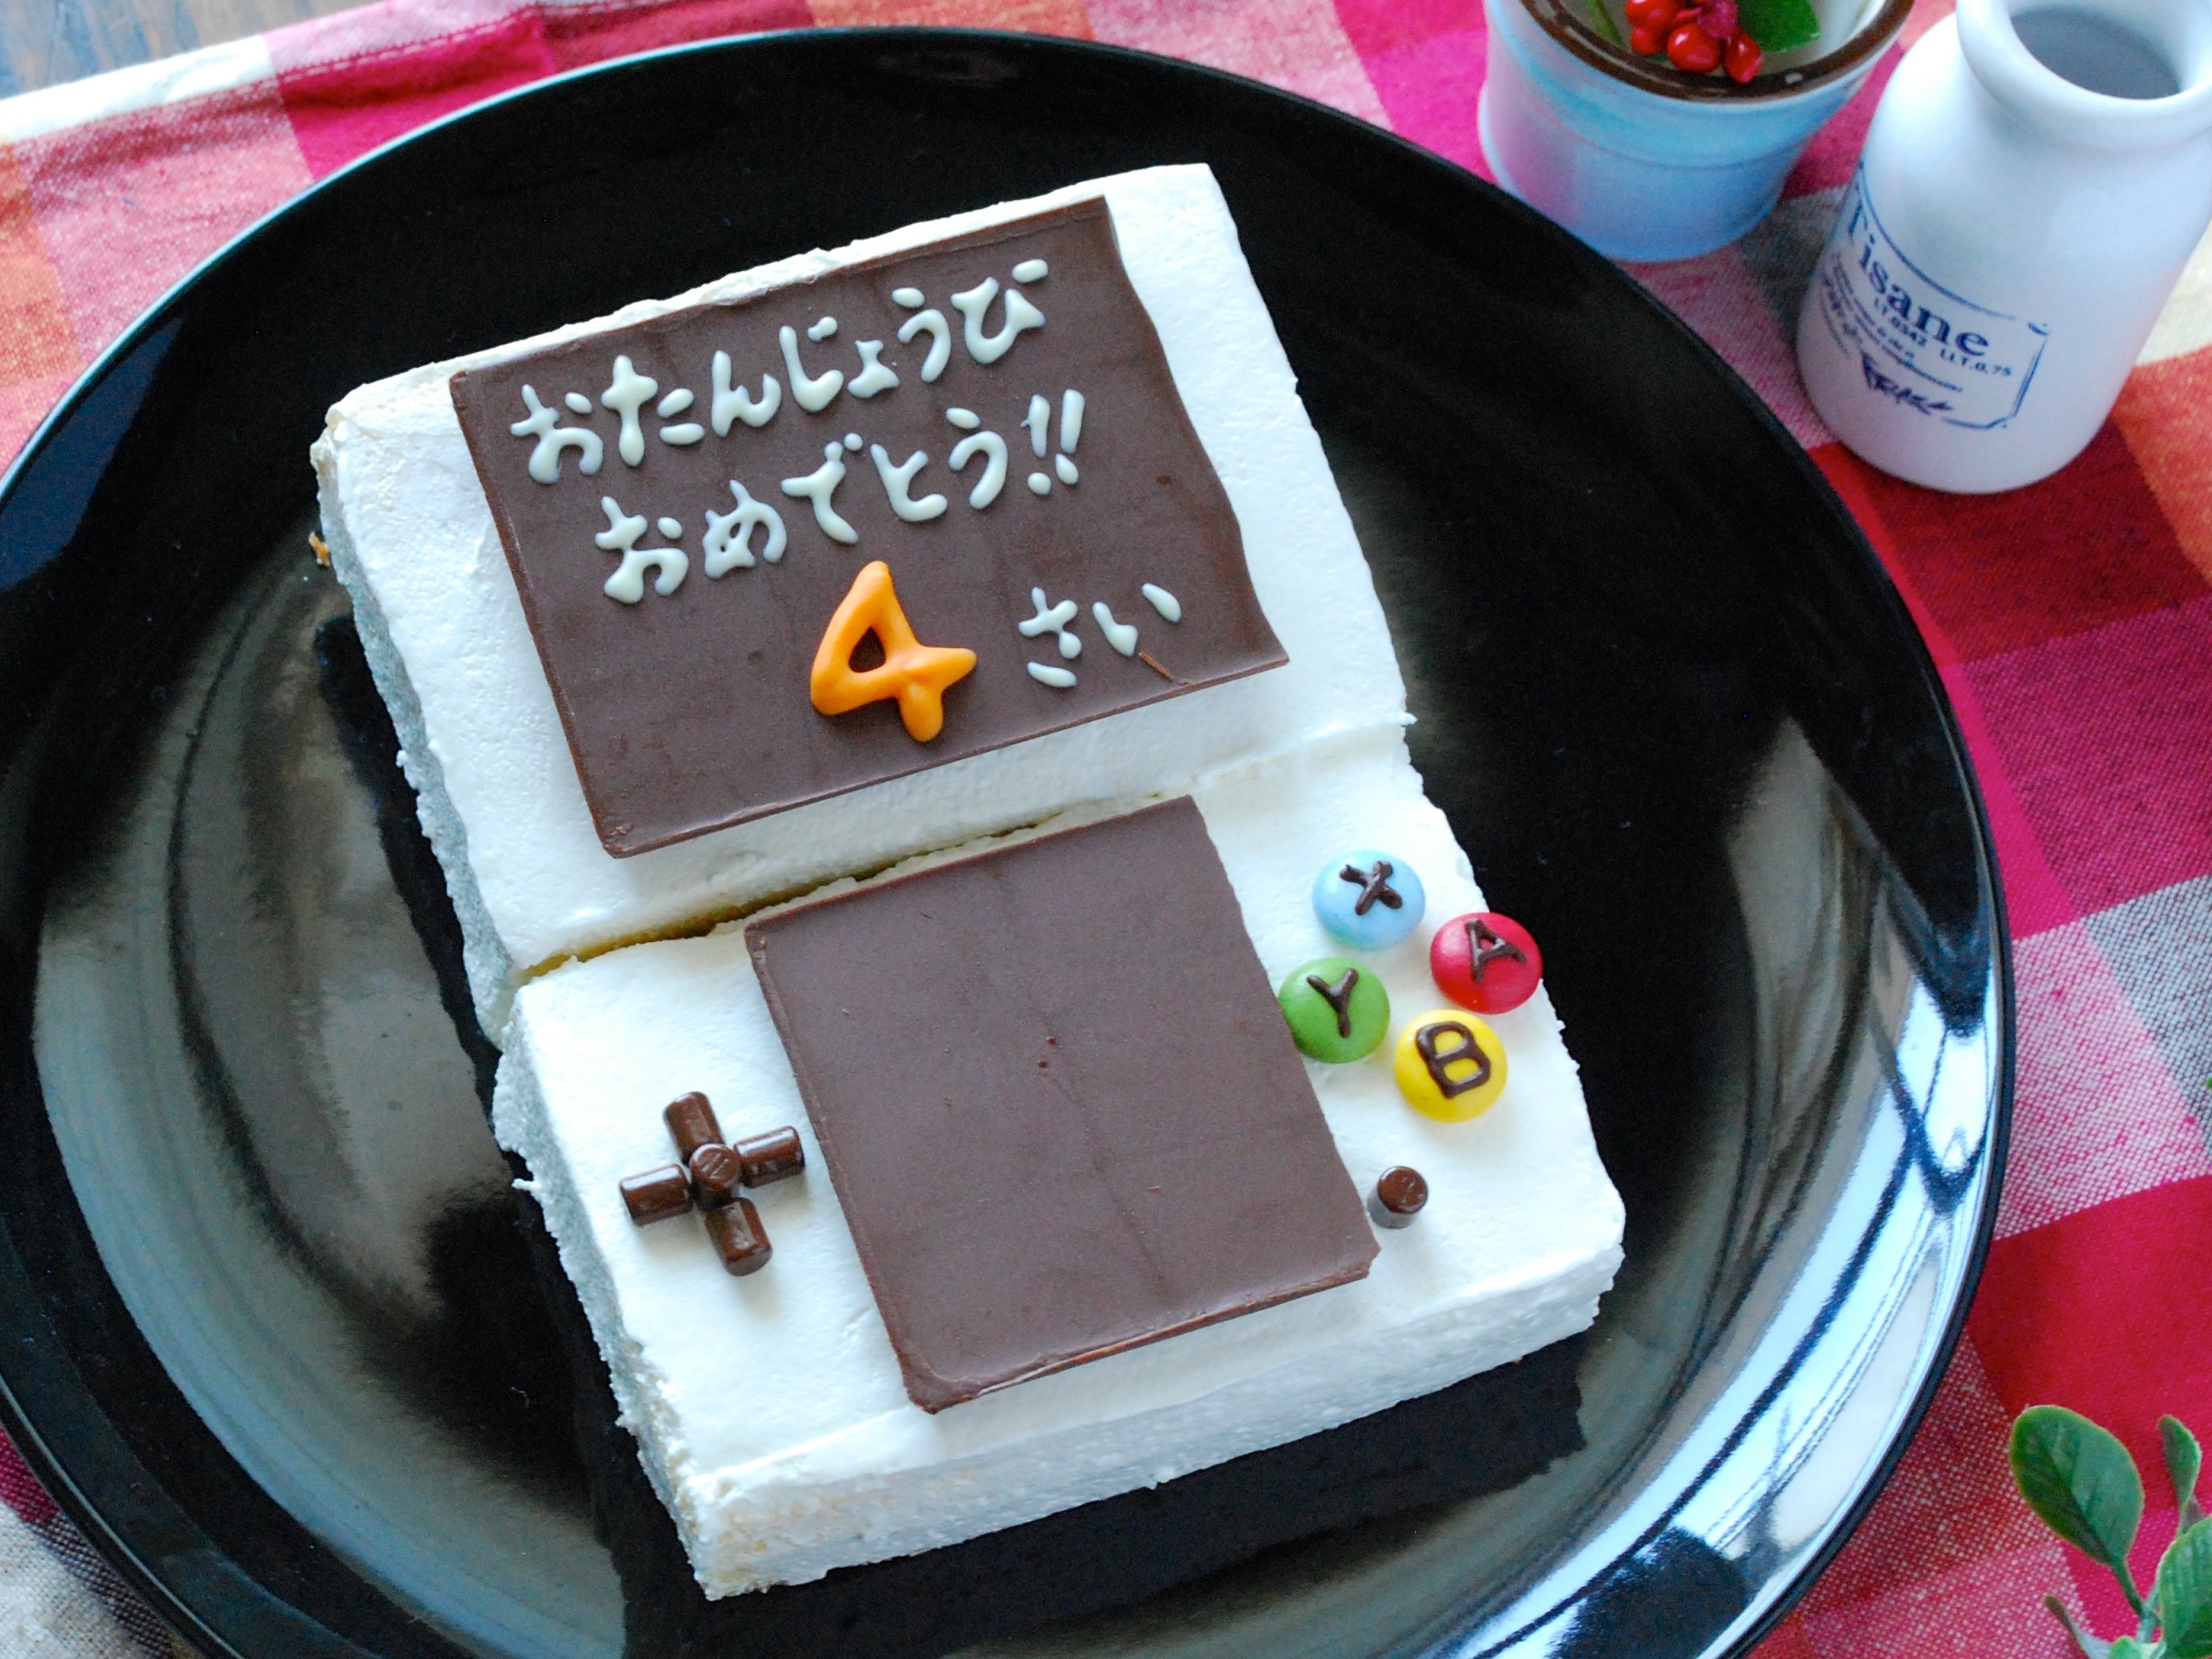 かわいい おいしい 手作りの誕生日ケーキレシピ 暮らしニスタ